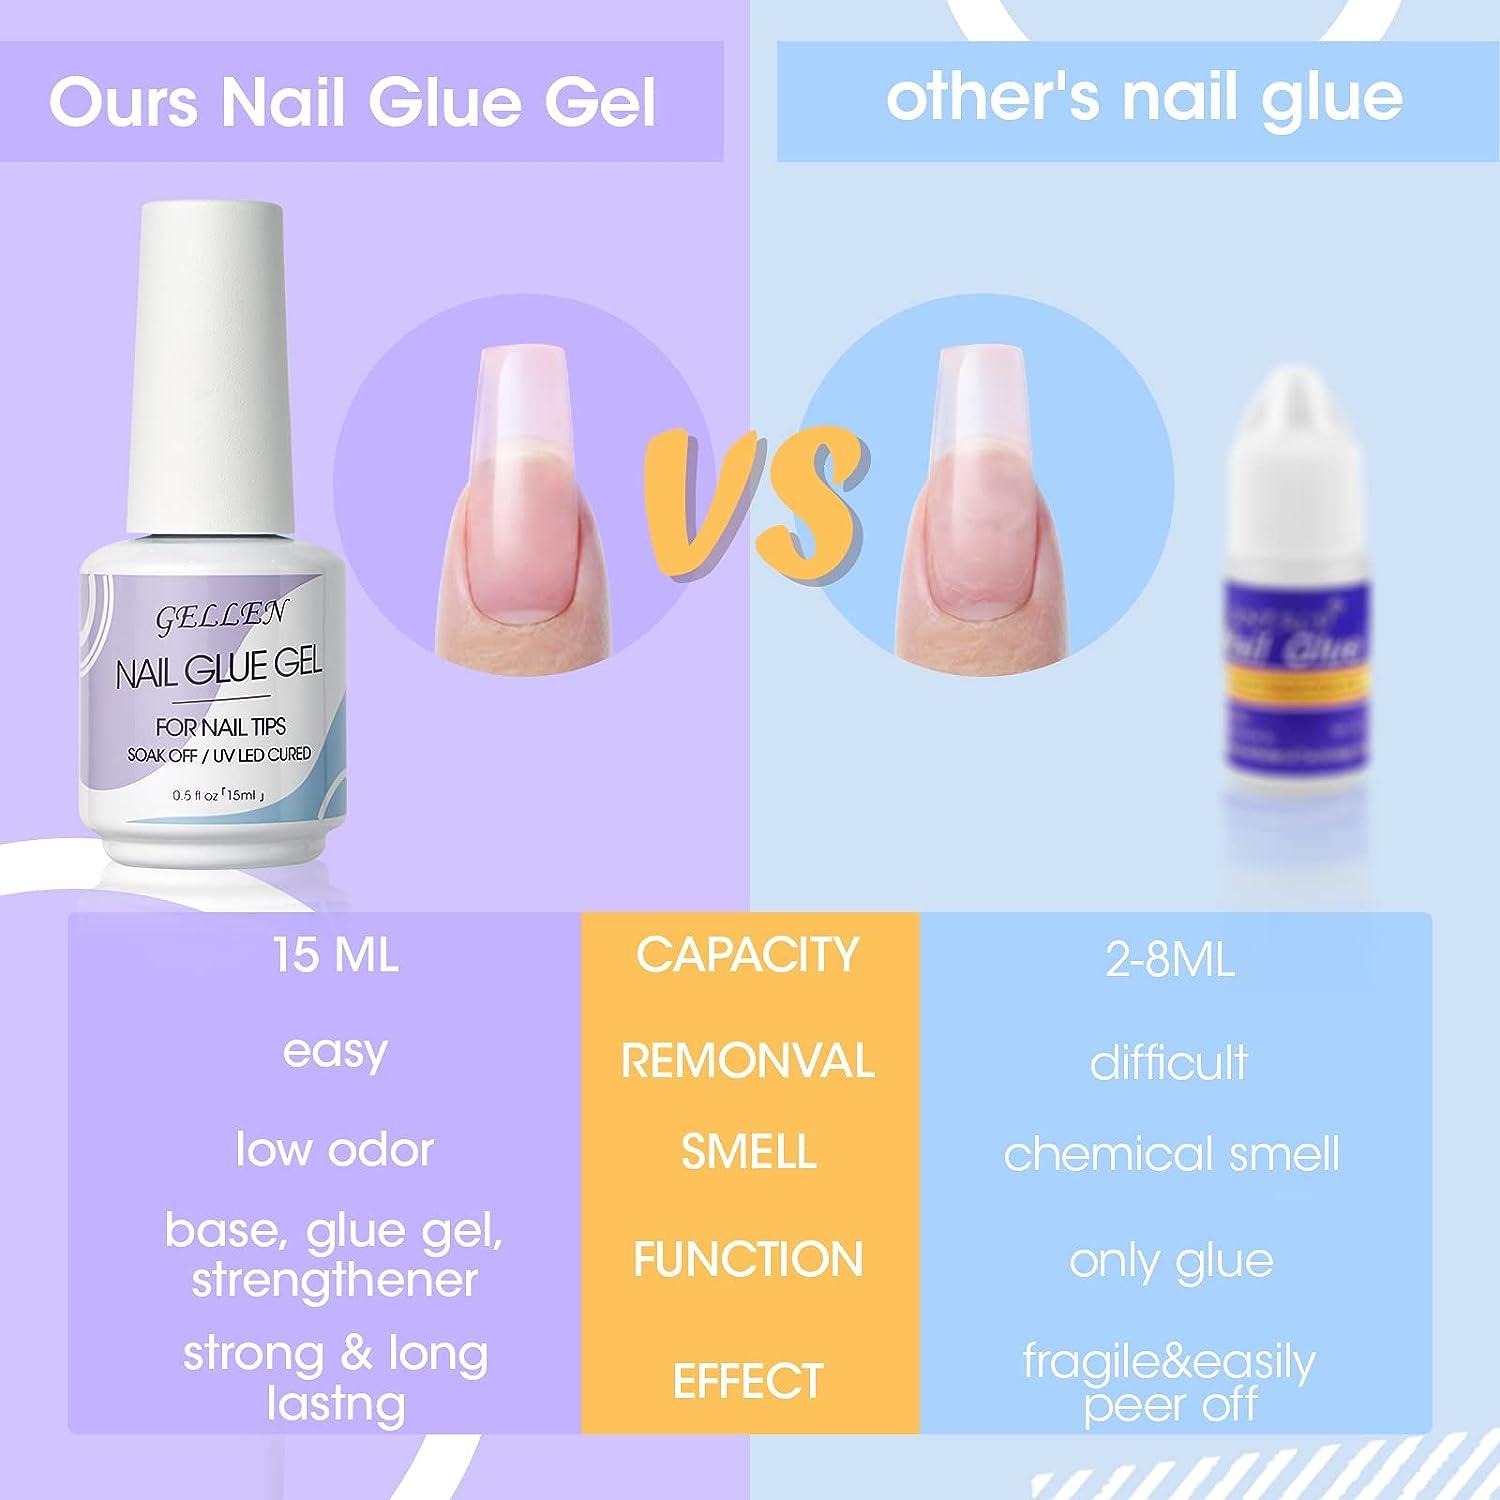 Gellen Nail Tips and Glue Gel Kit, Nail Extension Kit with 504pcs Almond Clear Fake Nails, U V LED Nail Lamp, 3 in 1 Nail Glue, Home/Salon DIY Nail A